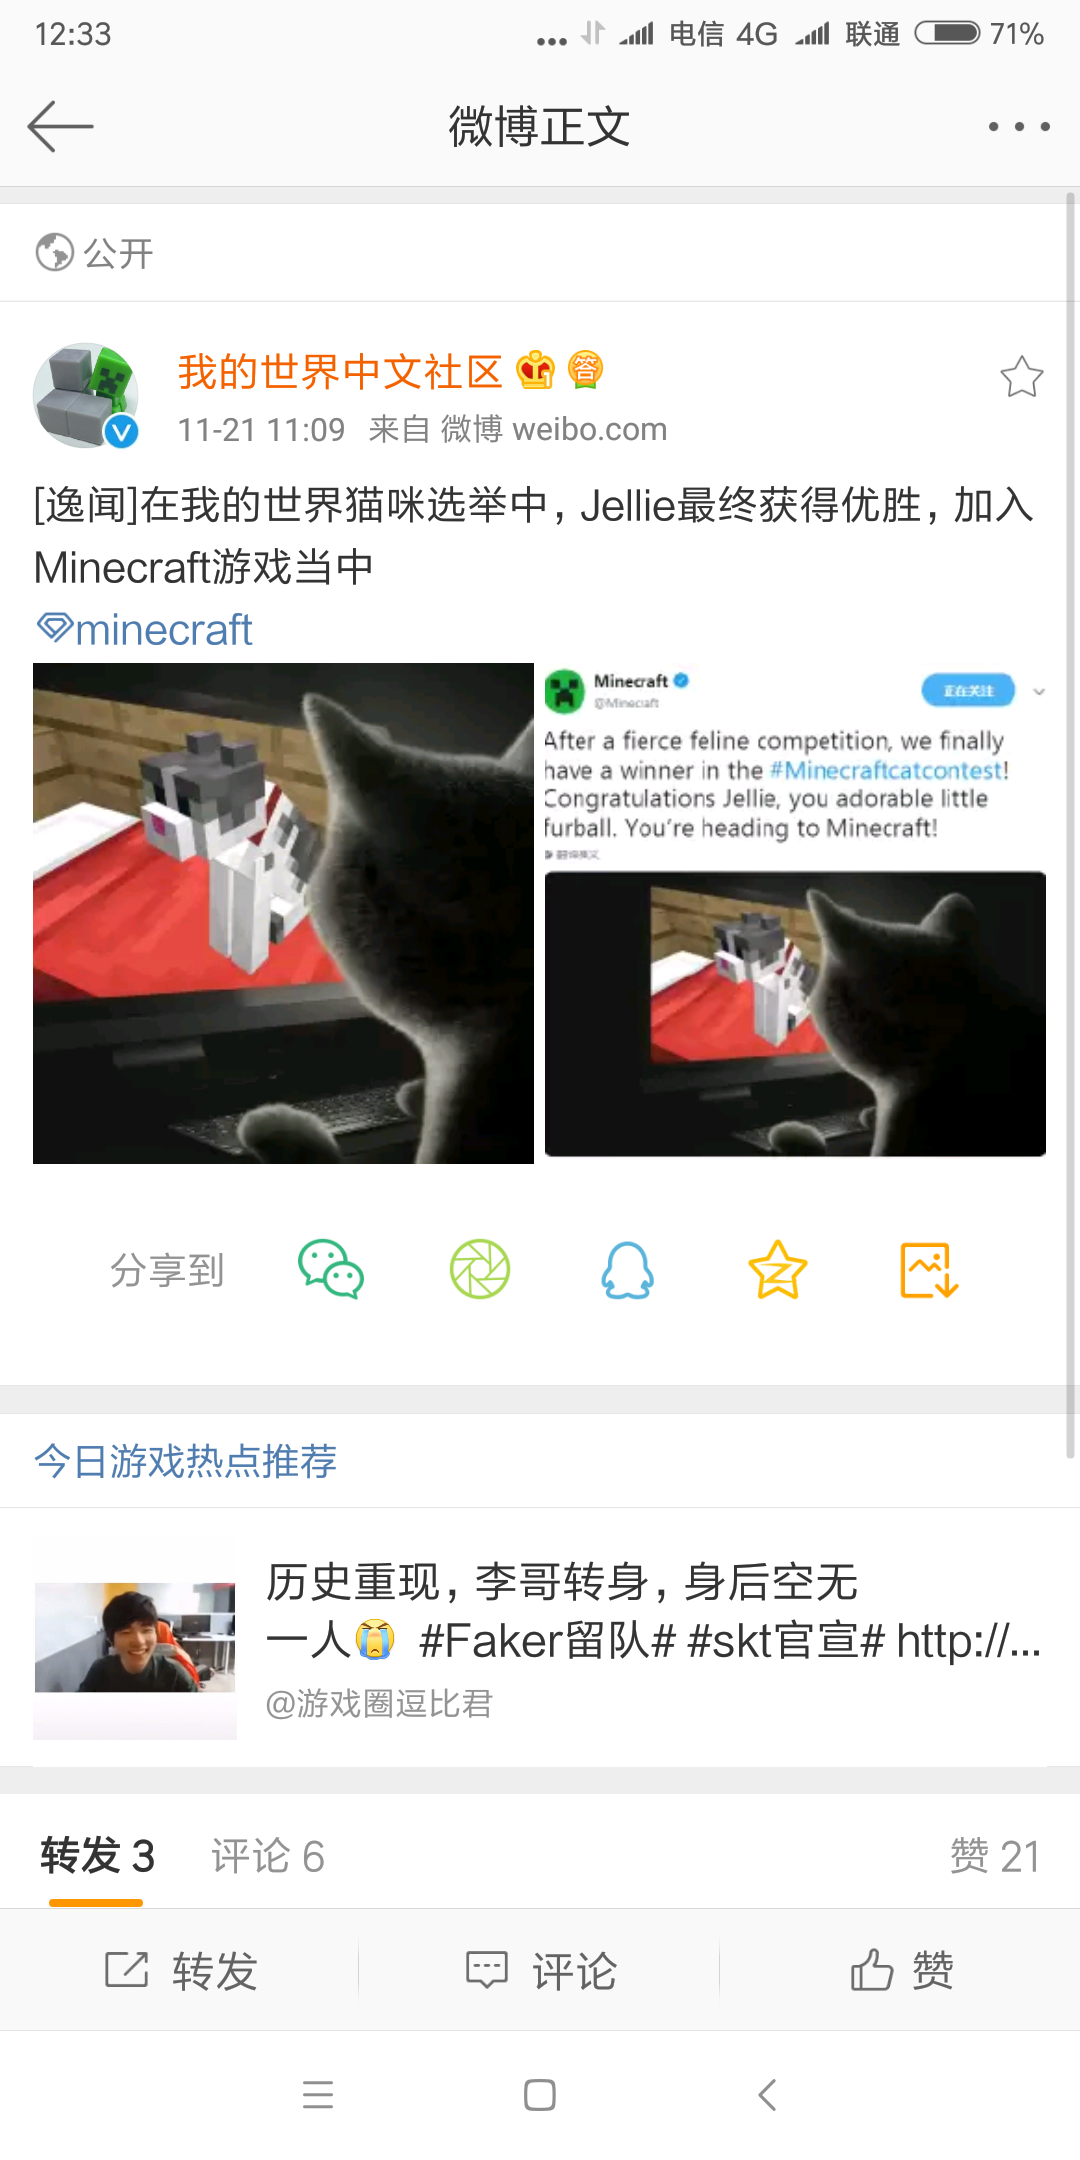 为你喜欢的猫咪投上一票 获胜者将会被添加到minecraft之中 新闻资讯 Minecraft 我的世界 中文论坛 手机版 Powered By Discuz